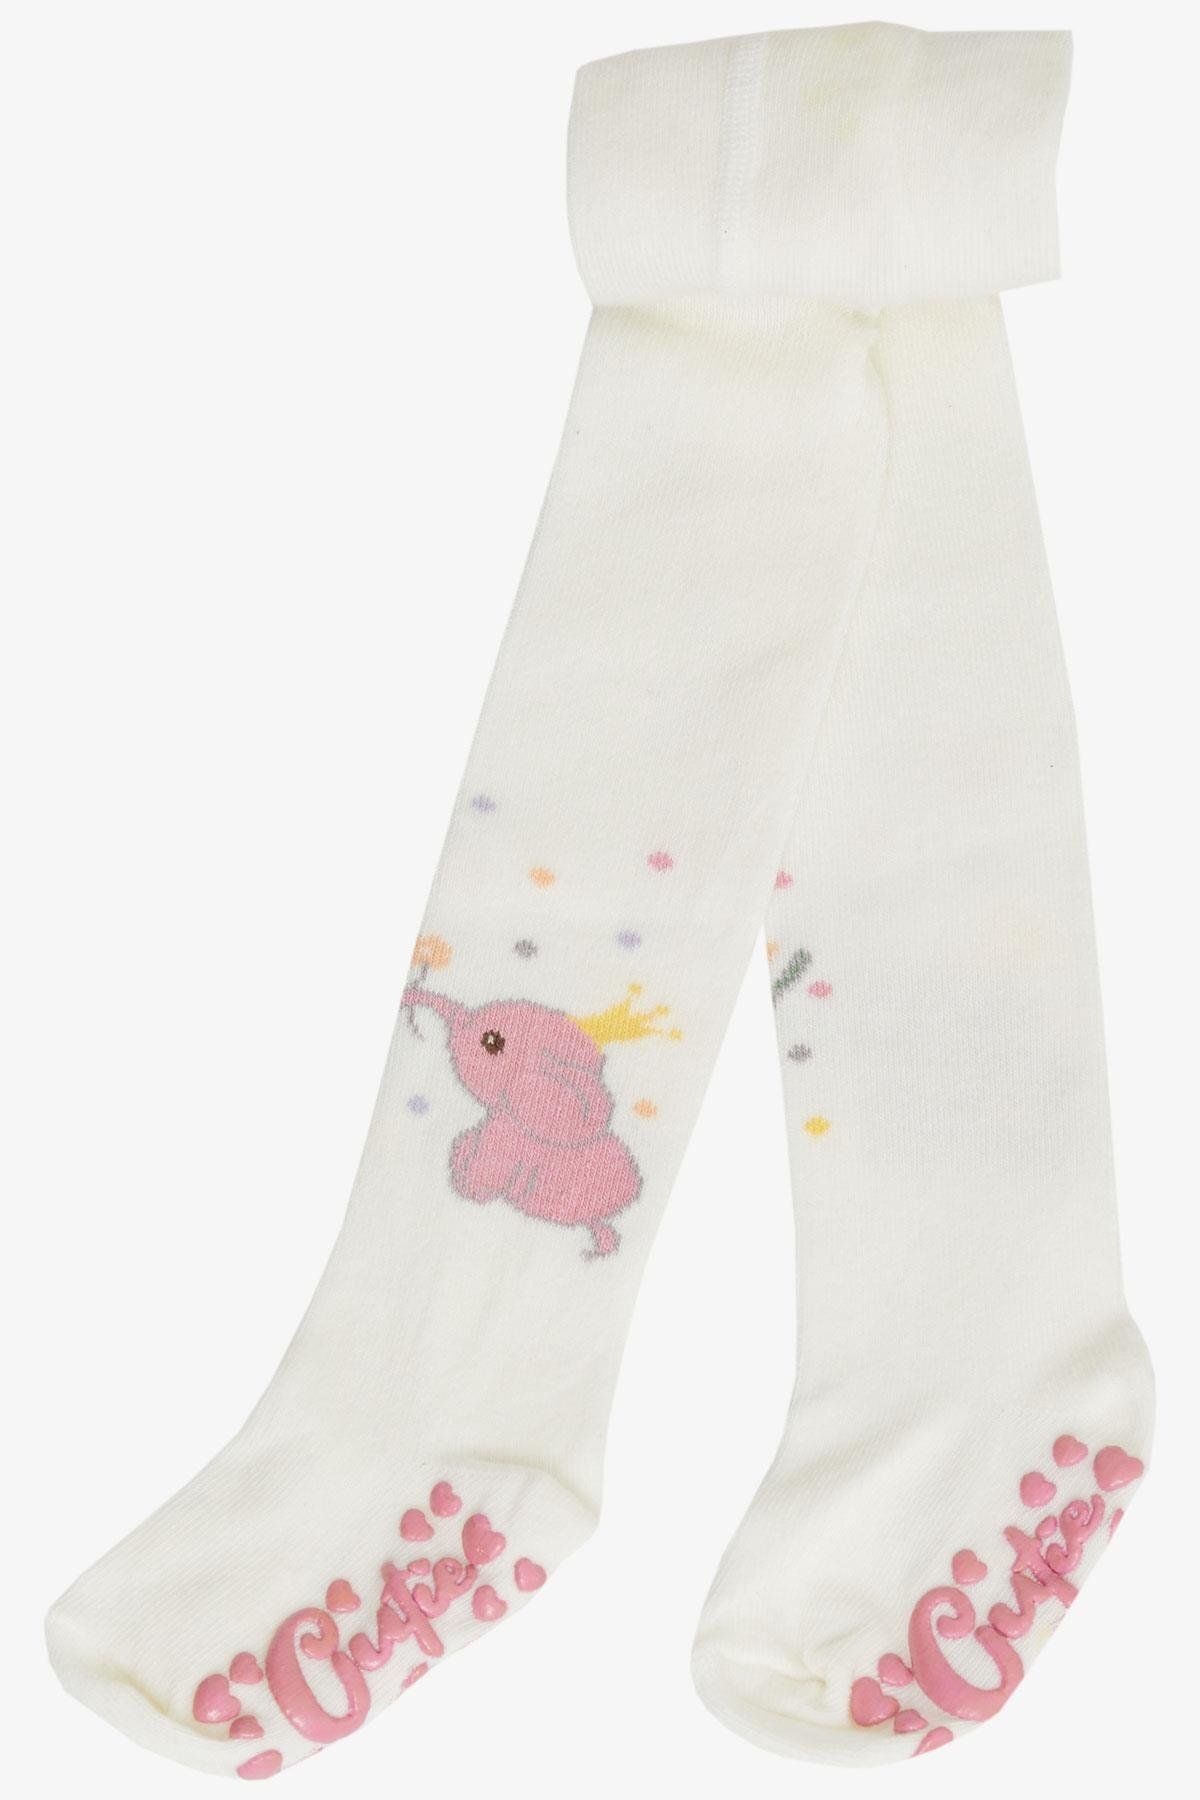 Katamino Kız Bebek Külotlu Çorap Sevimli Kral Fil Baskılı Abs Li 6-24 Ay, Ekru